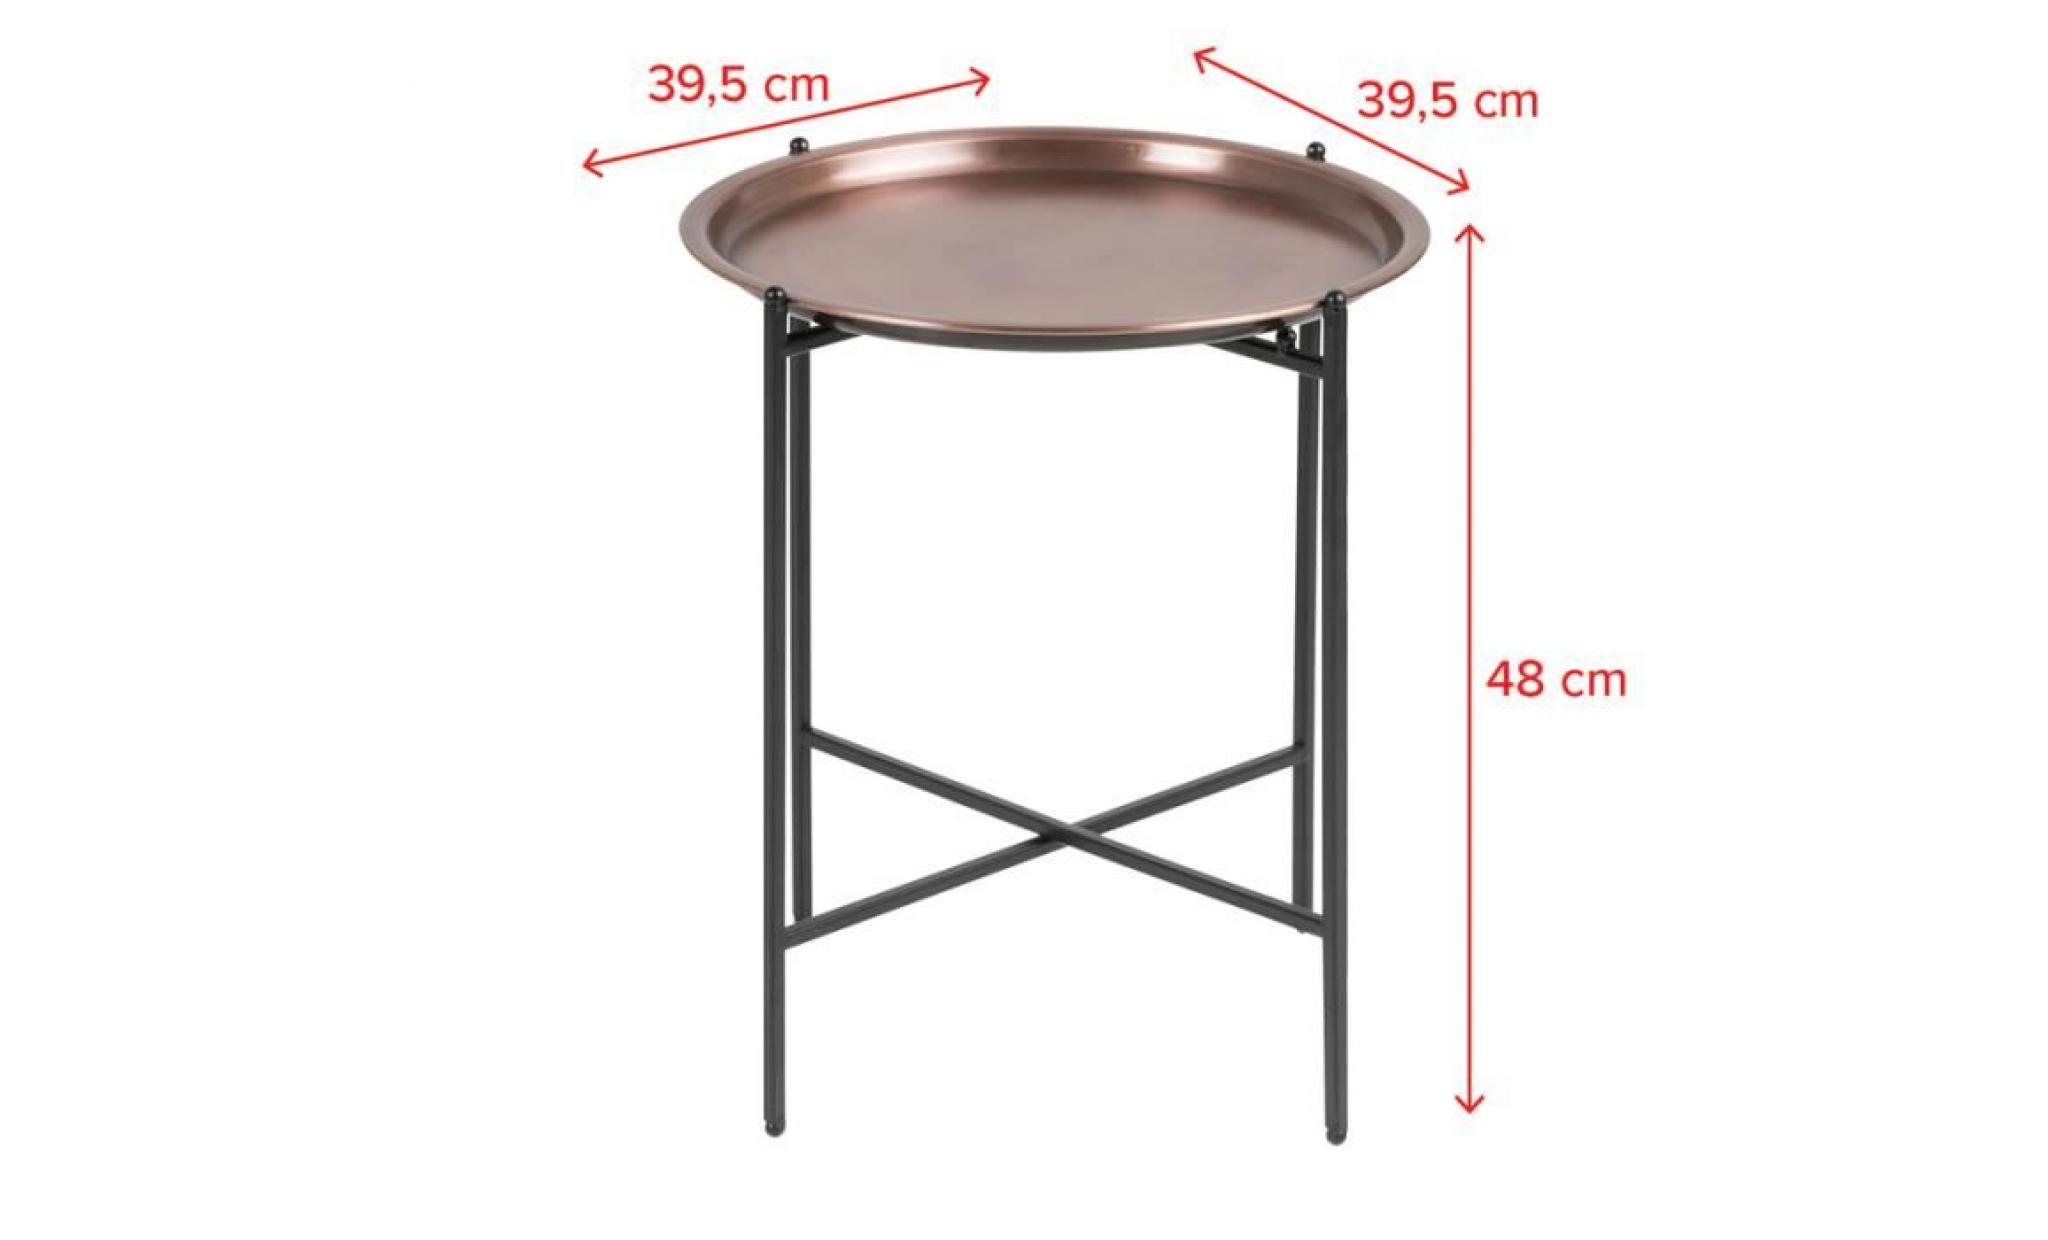 table de chevet glamour / table basse   millie   ⌀ 39,5 cm   noir / laiton   pieds en acier   style glamour   forme minimaliste pas cher